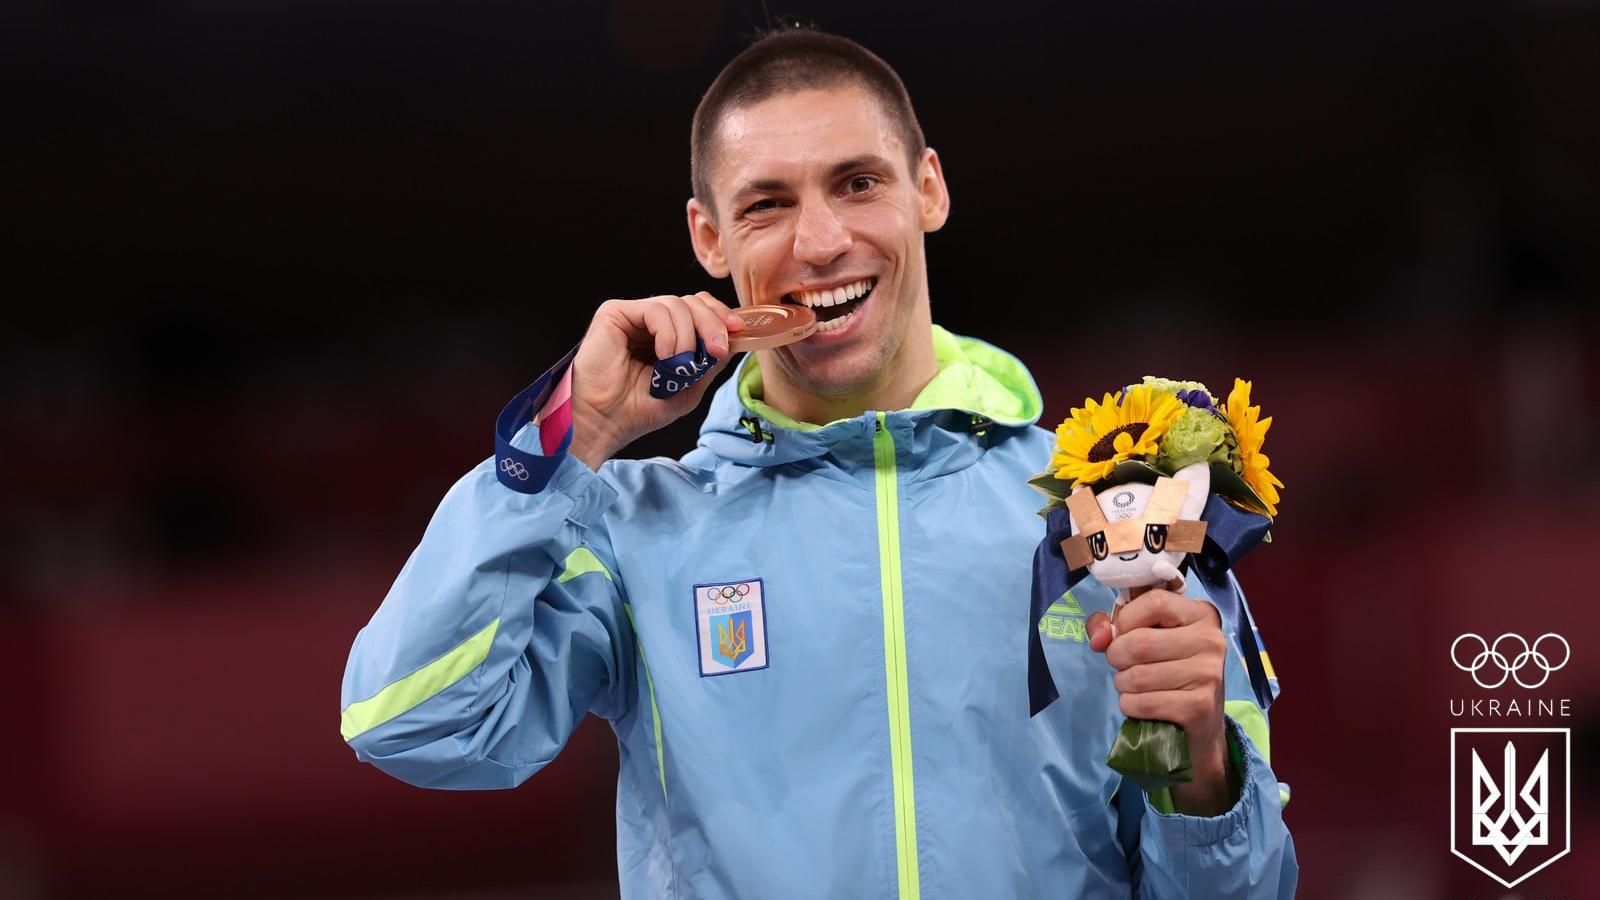 Горуна показав прийом з карате на українському олімпійському чемпіоні: відео - Новини спорту - Спорт 24